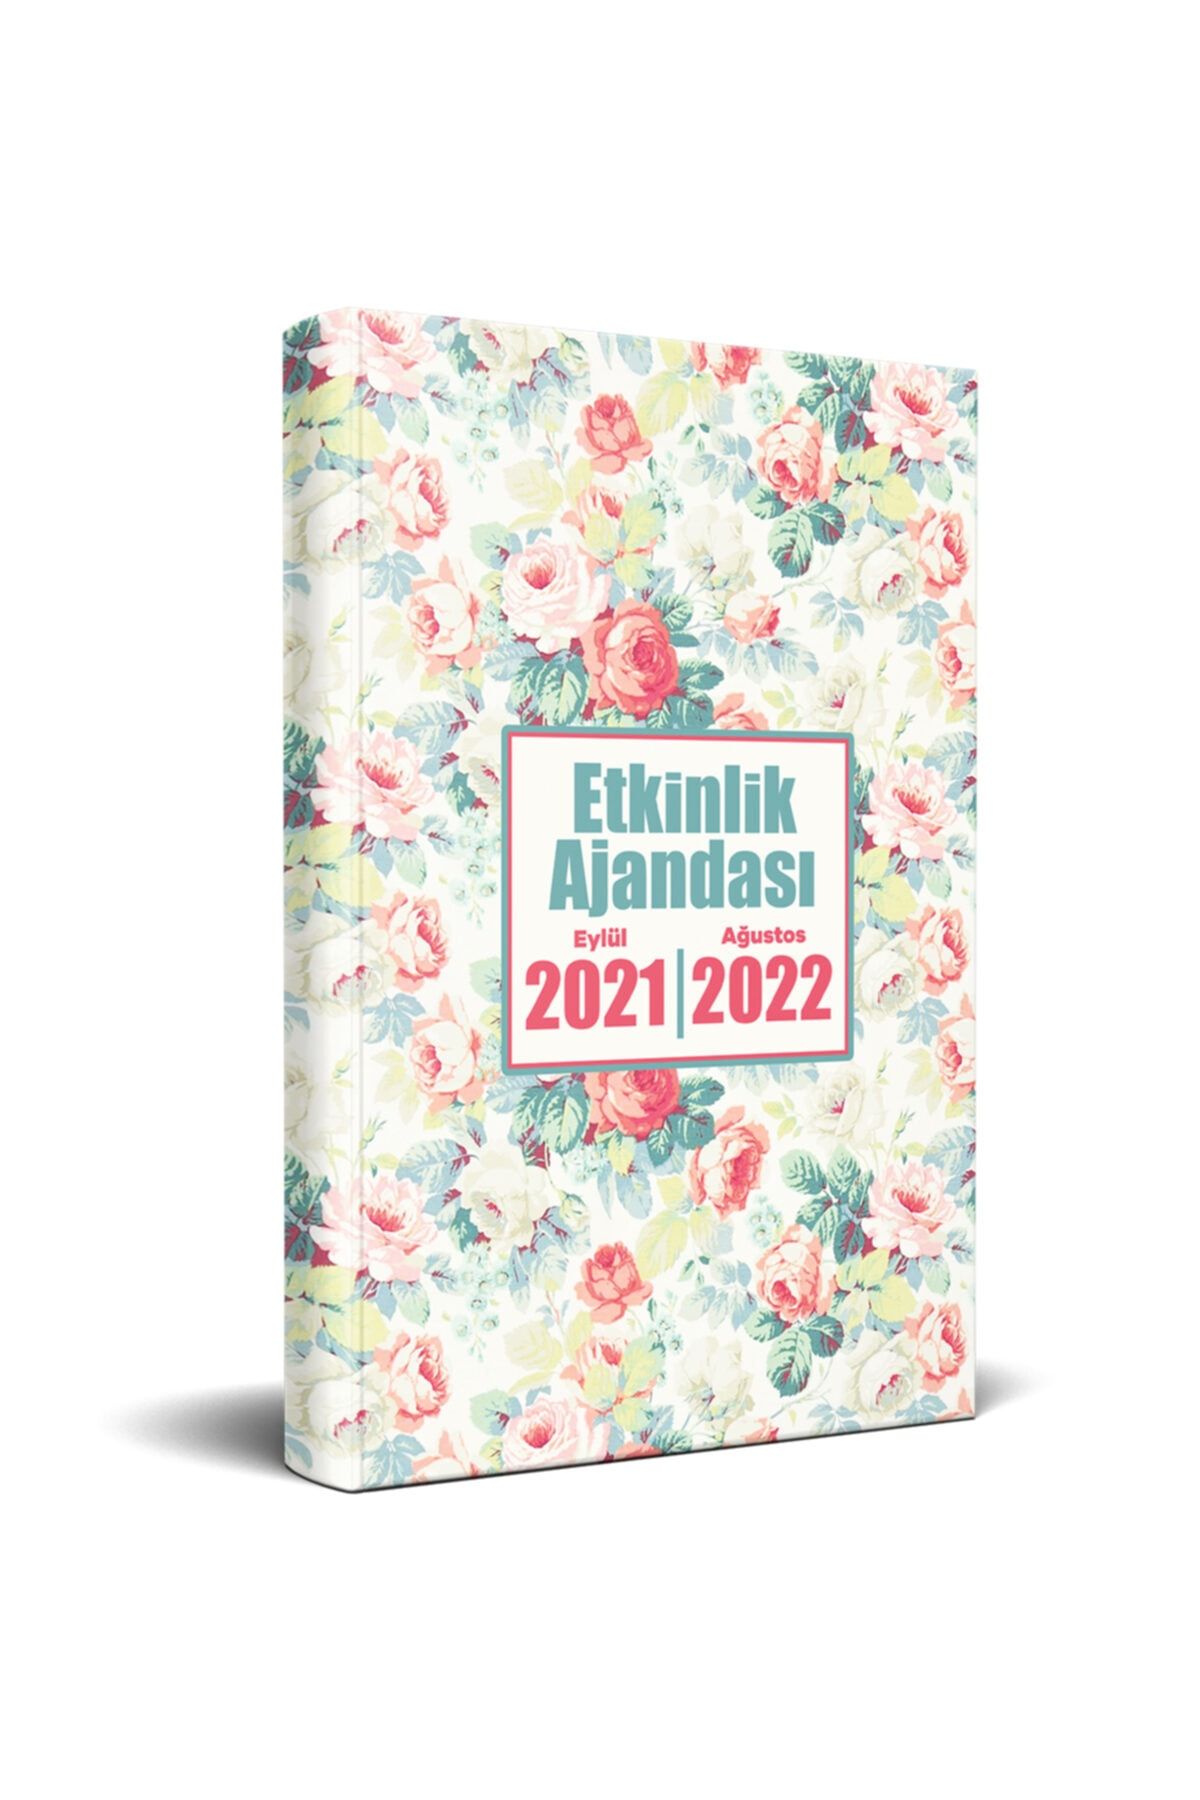 Halk Kitabevi 2021 Eylül-2022 Ağustos Etkinlik Ajandası - Gül Goncası